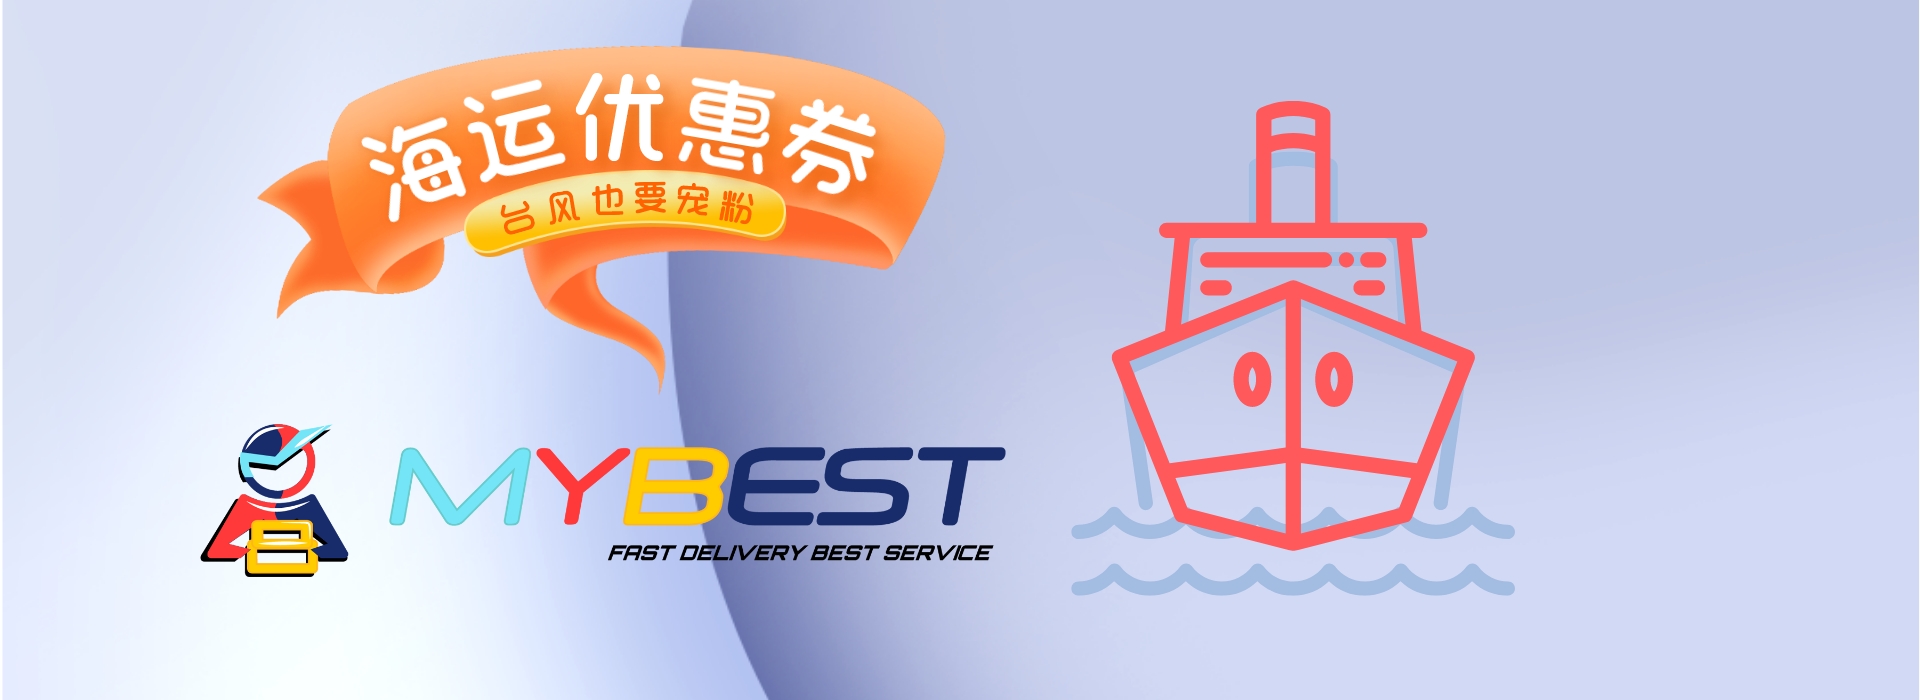 海运优惠券 | 台风也送补贴 | MYBEST 中国发马来西亚海运服务 | 海运快递 | 自提海运 | 立方海运 | 拼多多海运 